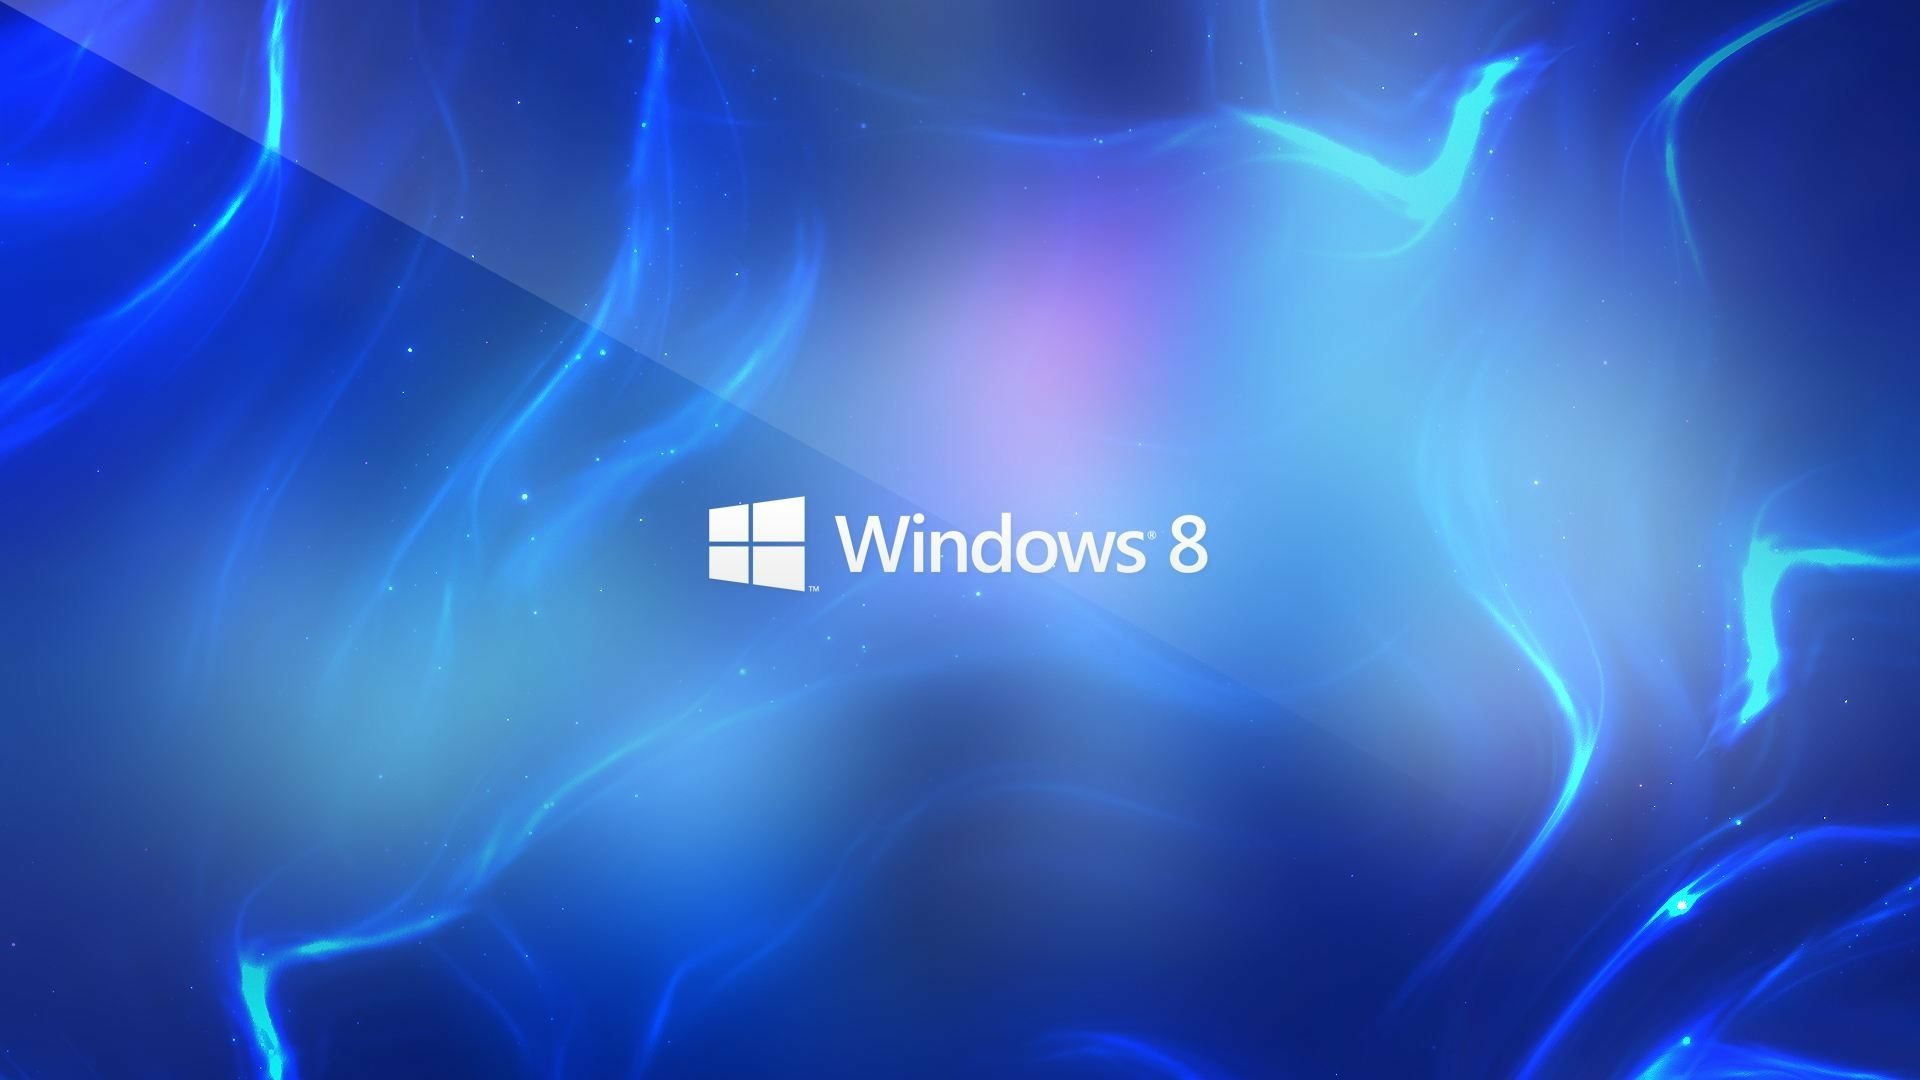 Windows 8 Full HD Tapeta and Tło | 1920x1080 | ID:461330 Full Hd Wallpapers For Windows 8 1920x1080